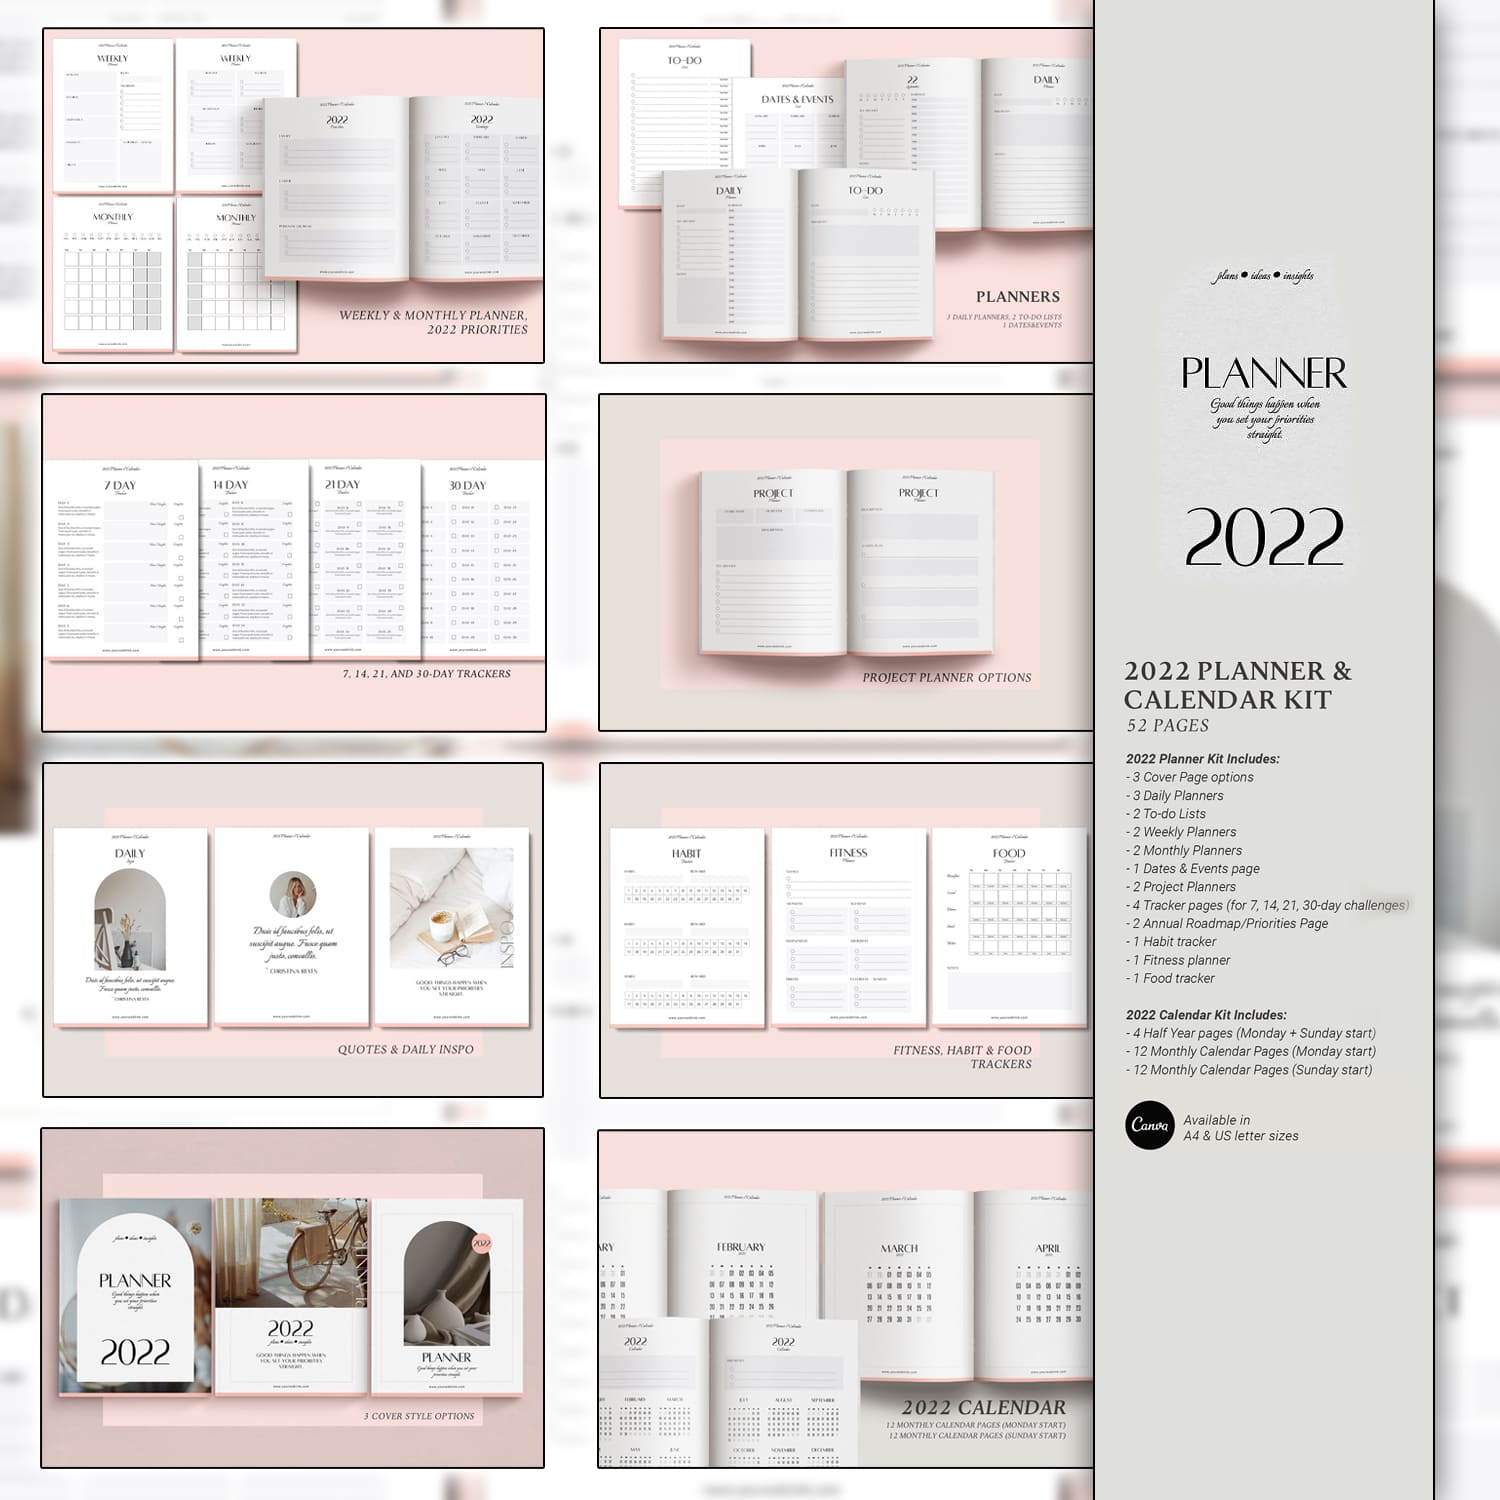 Canva Planner & 2022 Calendar kit v3 cover.